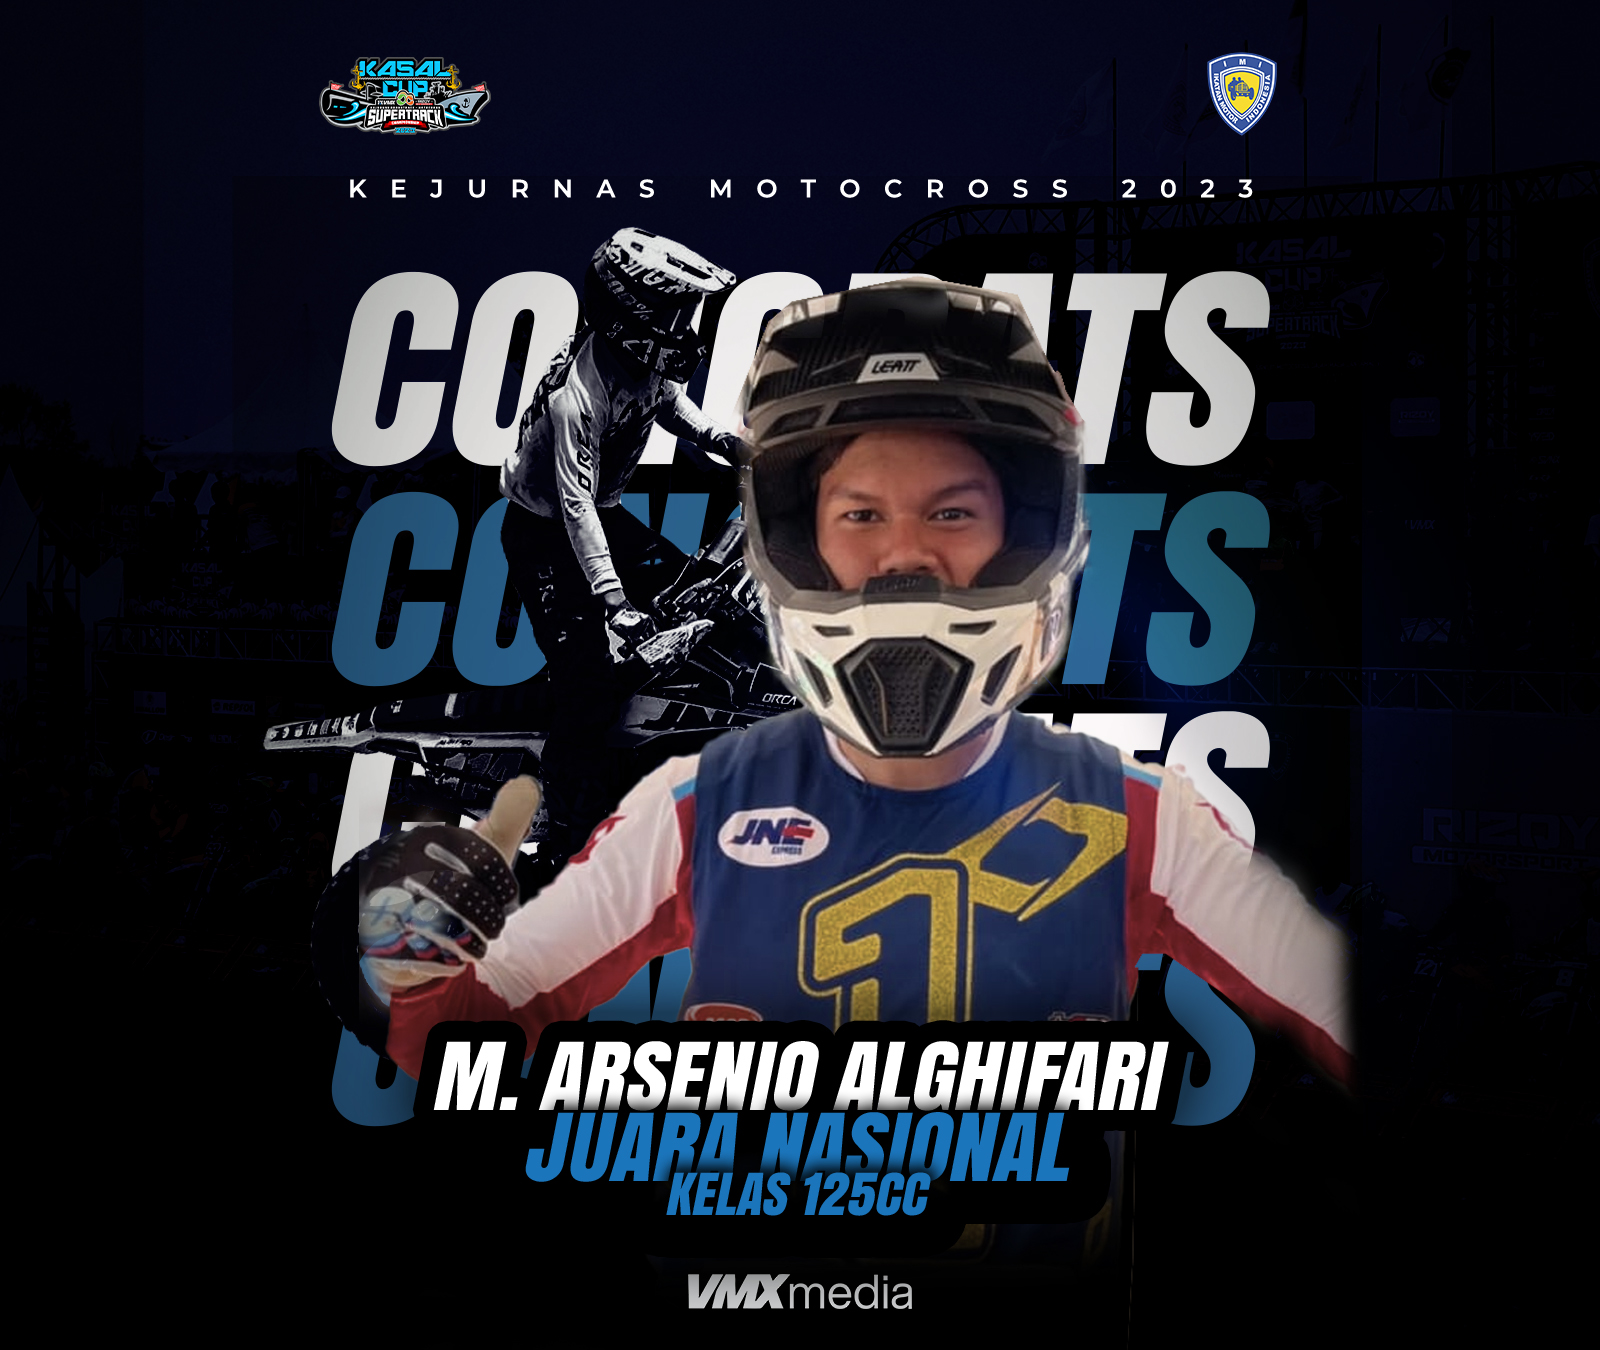 M. Arsenio Raih Juara Nasional MX 125cc Dua Tahun Berturut-Turut